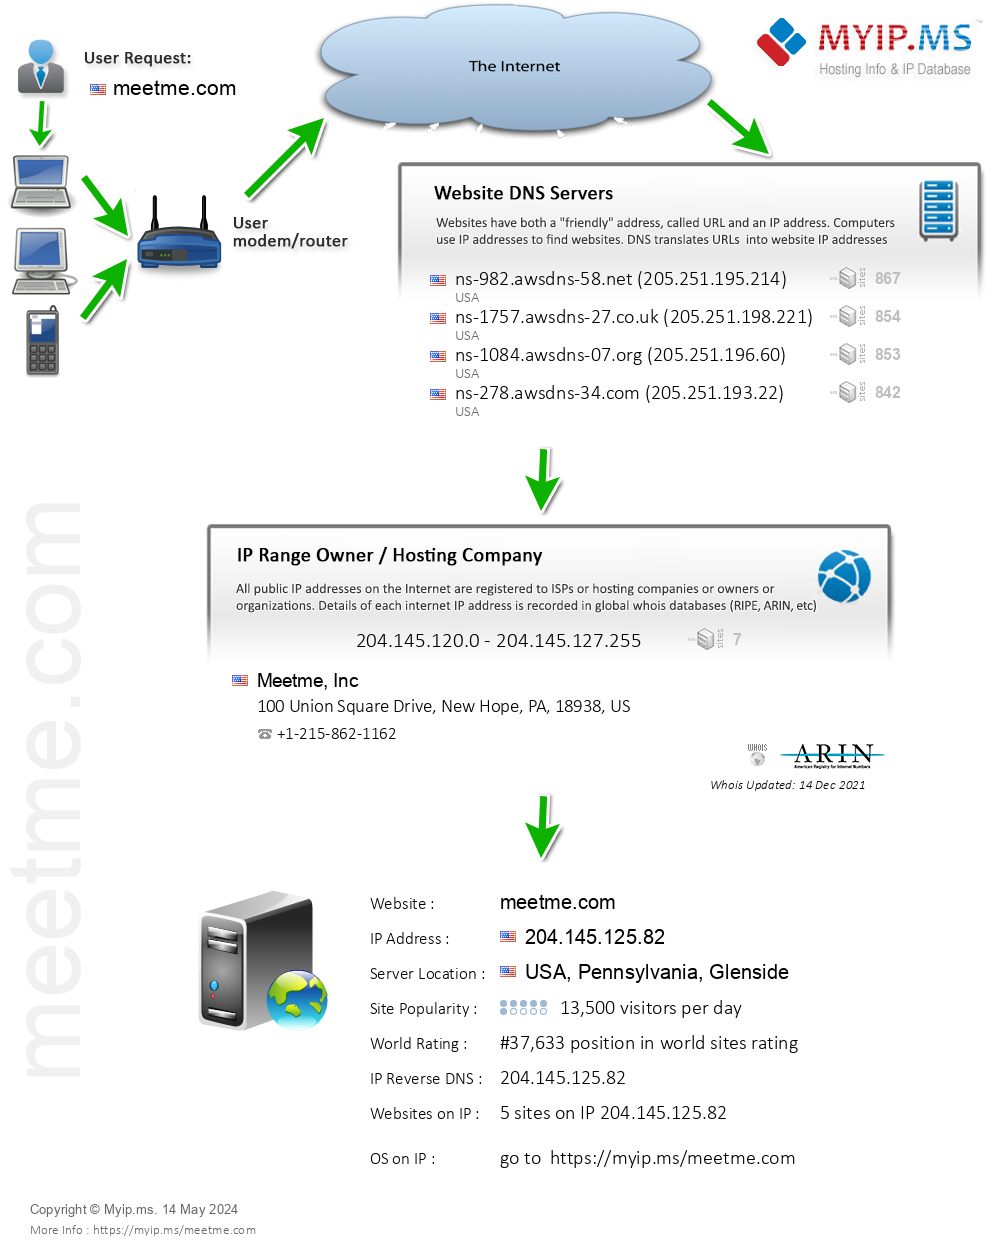 Meetme.com - Website Hosting Visual IP Diagram